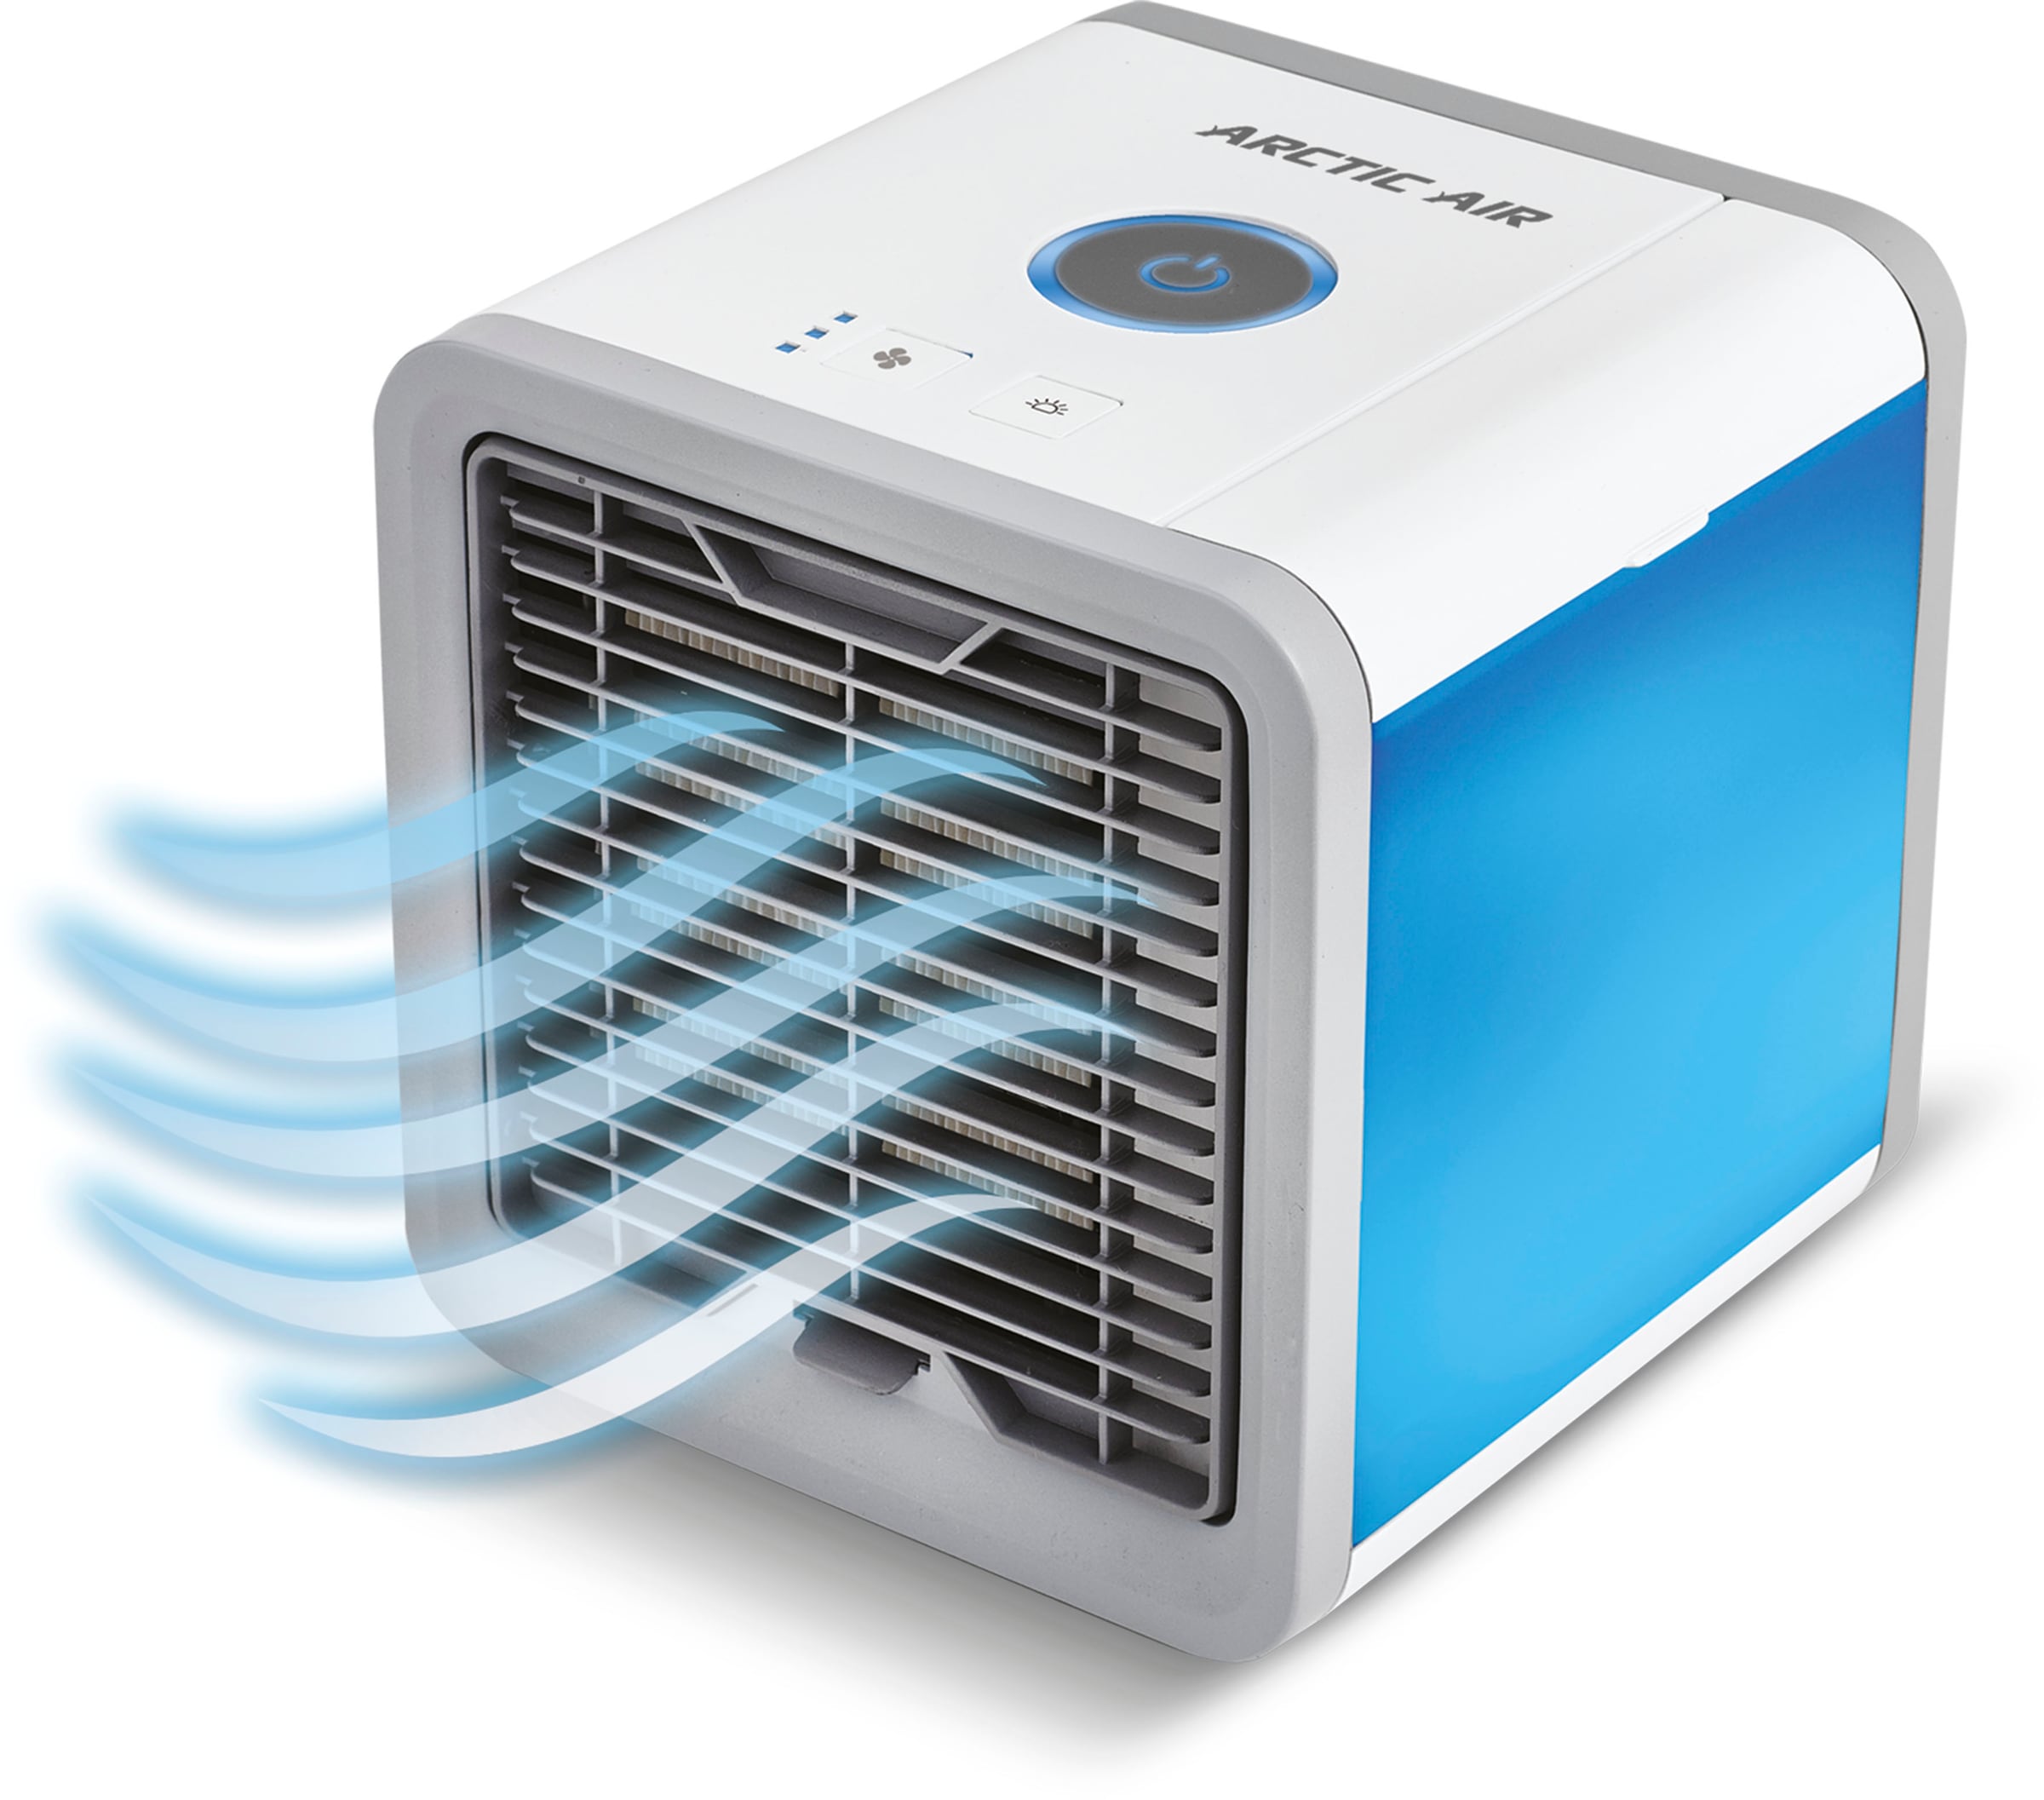 MediaShop Ventilatorkombigerät "Arctic Air", Luftkühler, kühlt, befeuchtet und erfrischt die Luft in Ihrer Umgebung